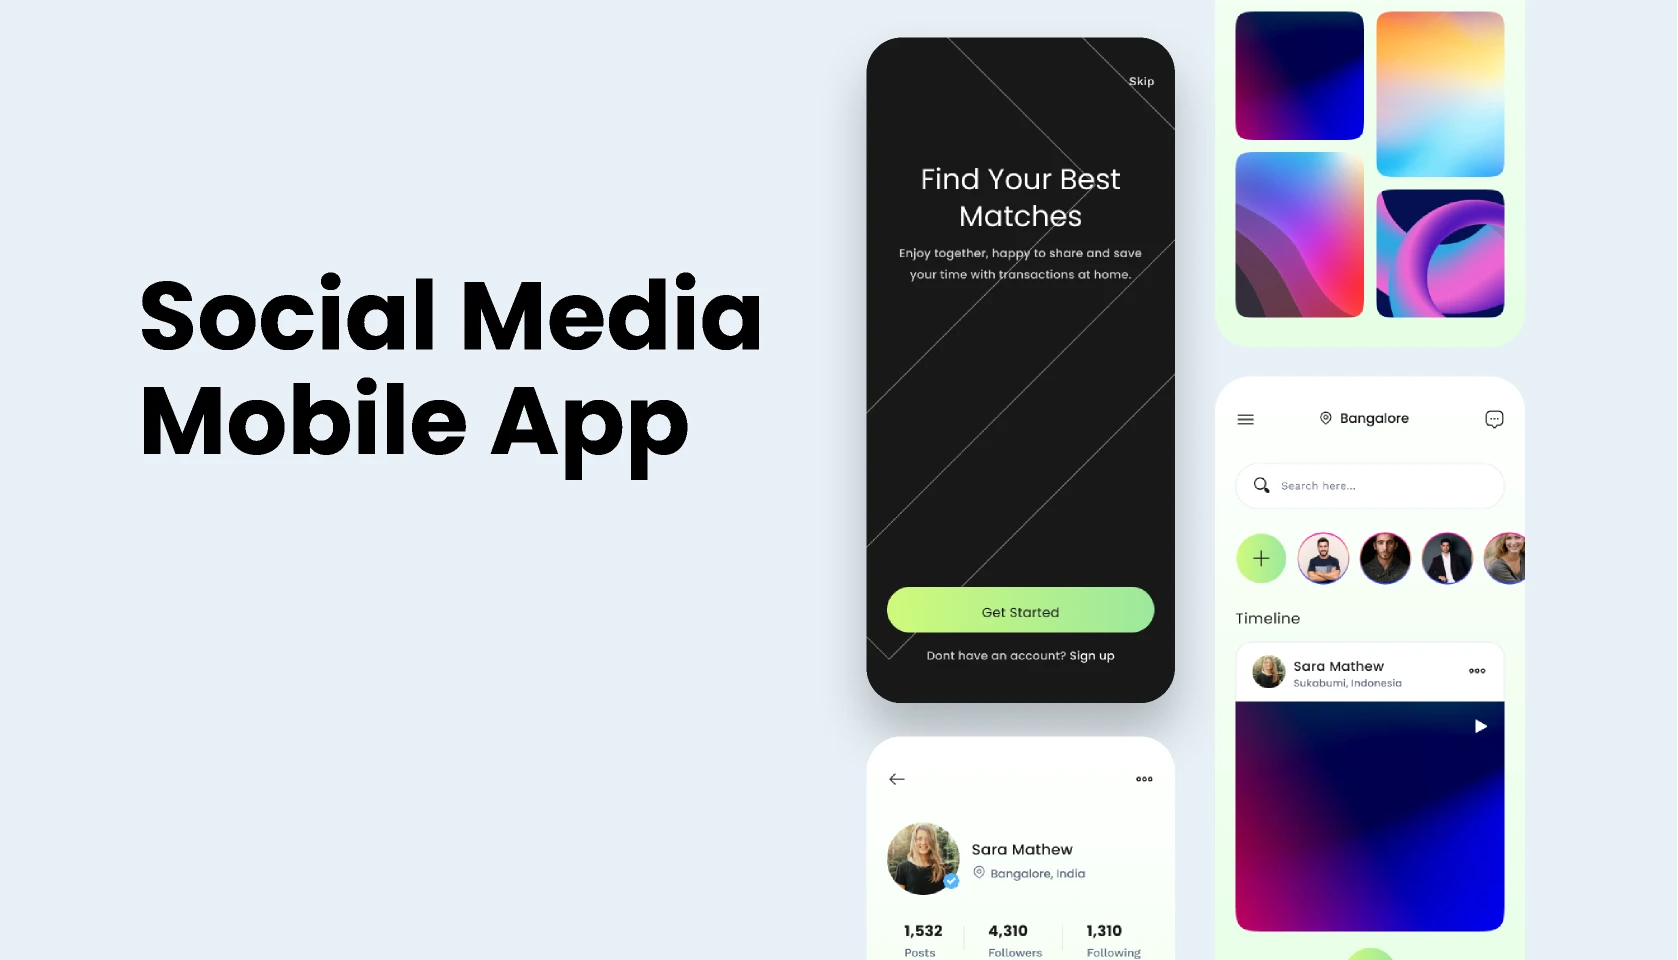 Social Media Mobile App - UI Design for Figma and Adobe XD